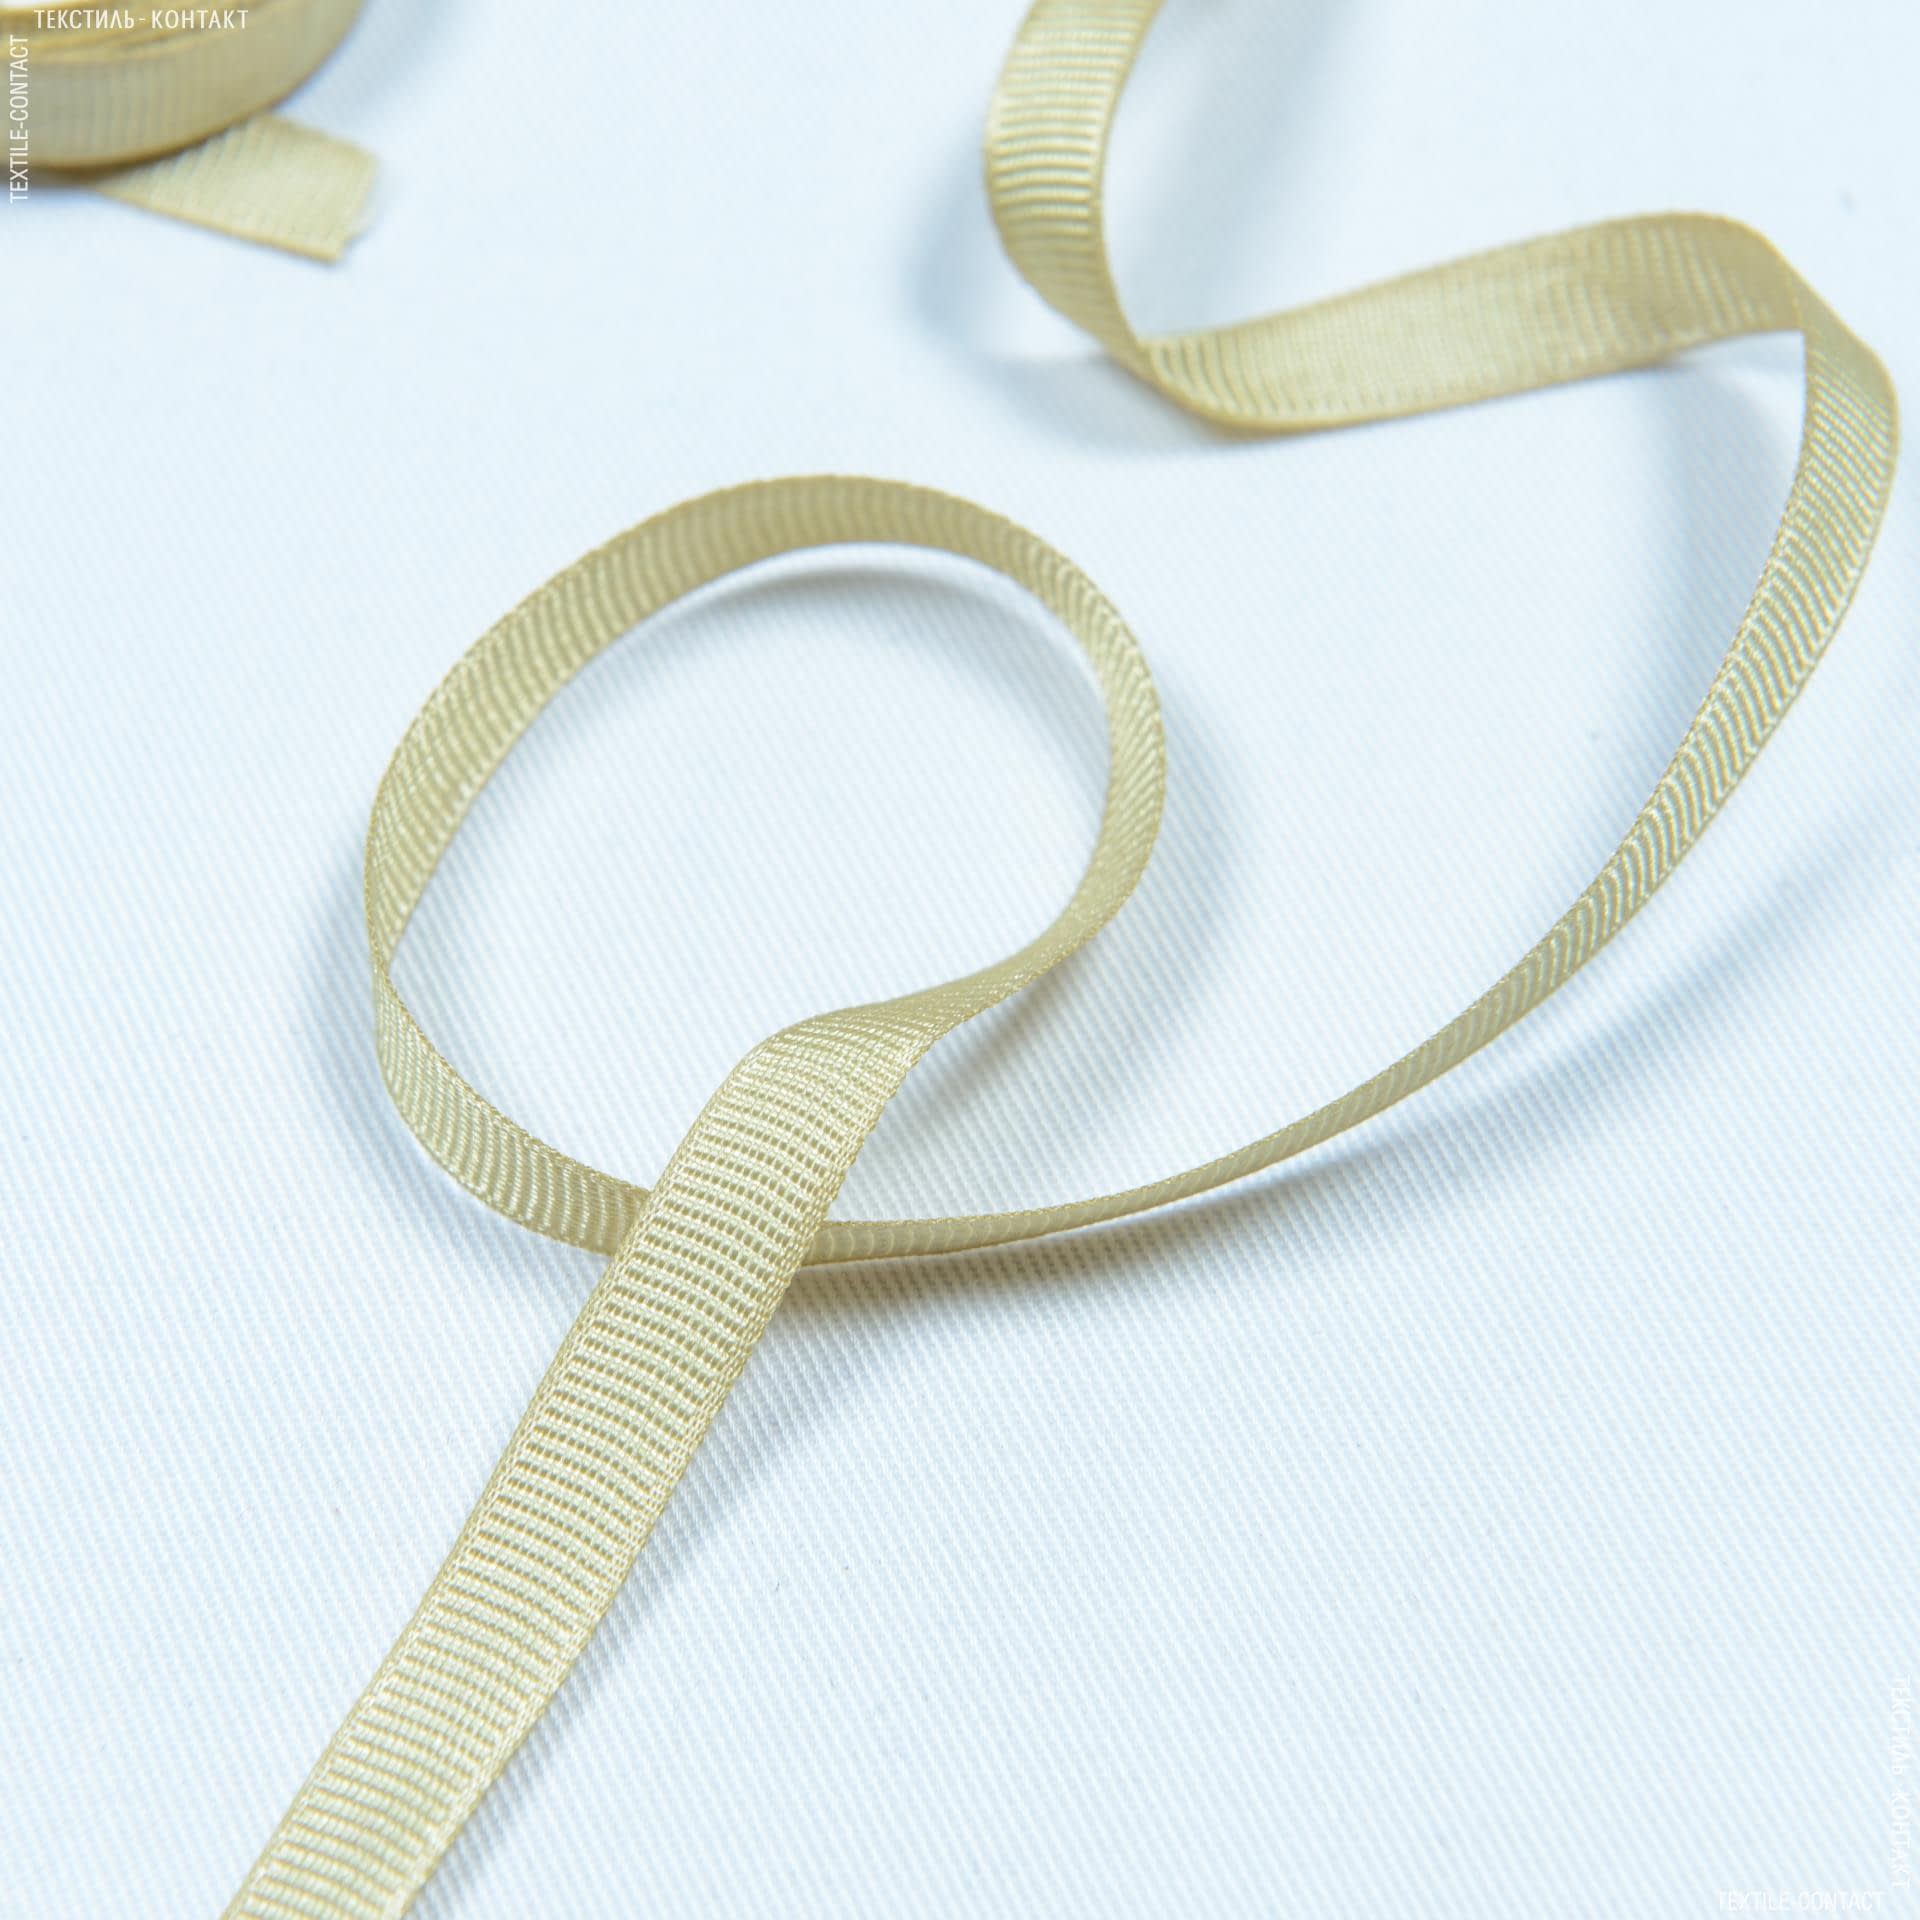 Ткани фурнитура для декора - Репсовая лента  ГРОГРЕН / GROGREN  желто-оливковый 7 мм (20м)